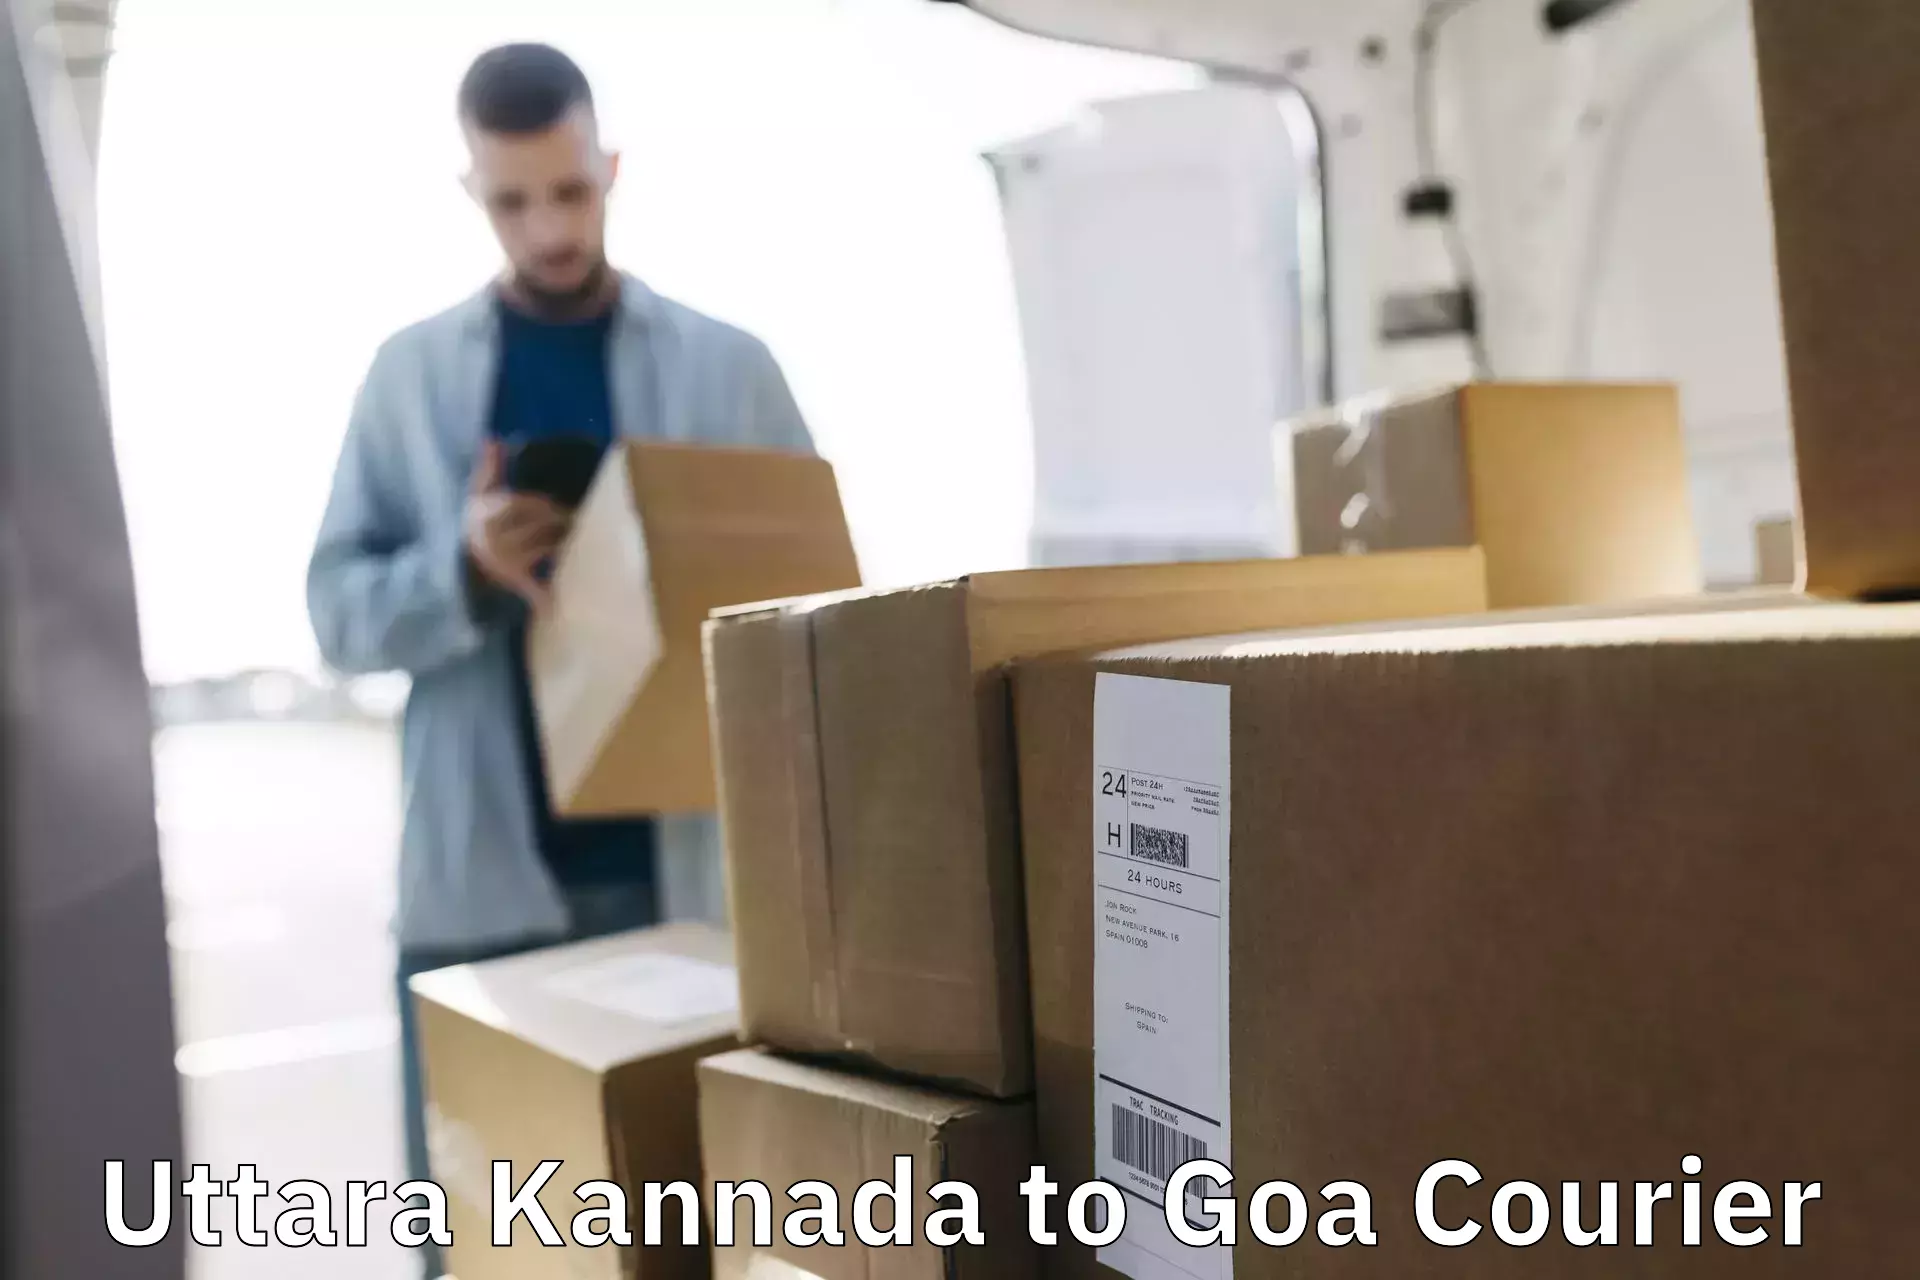 Sustainable courier practices Uttara Kannada to Goa University